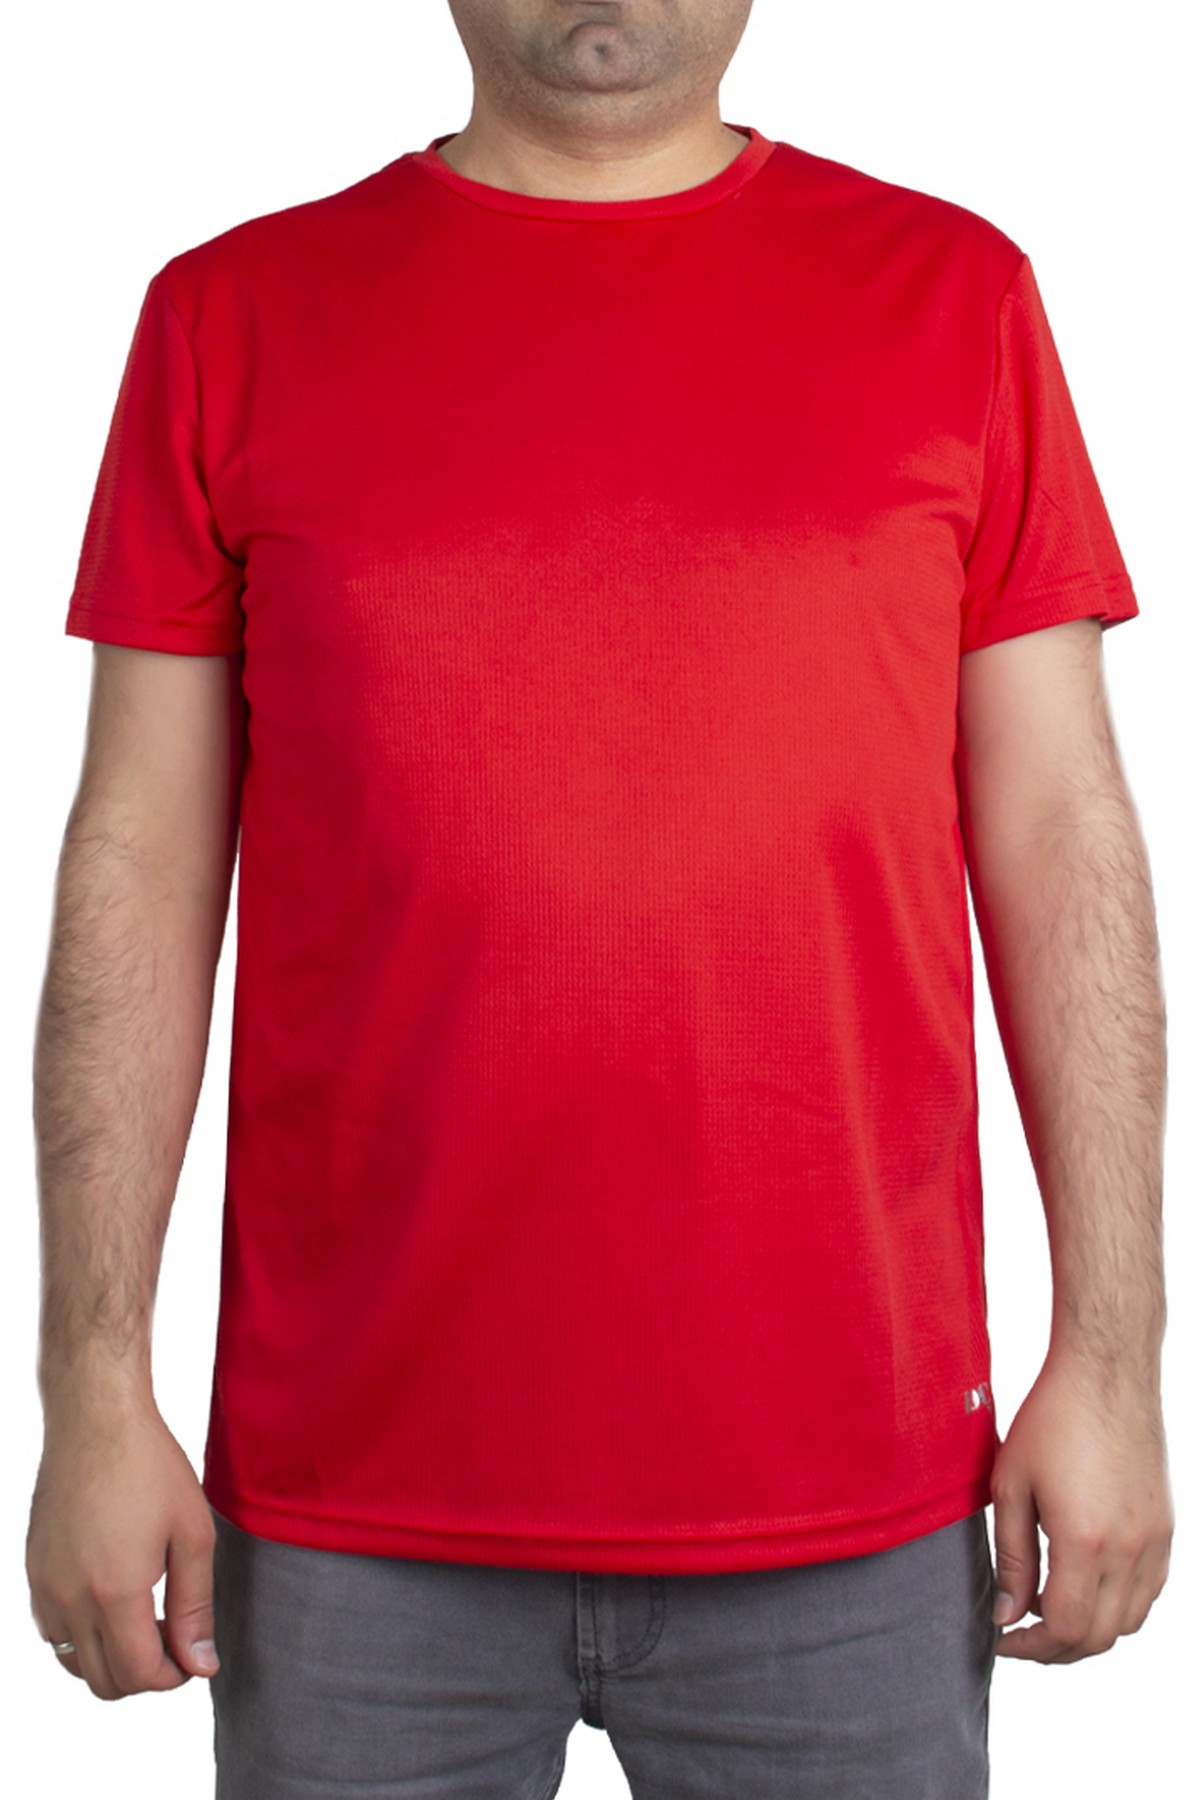 Loç MTHE37 - Runner Erkek Kırmızı Tişört